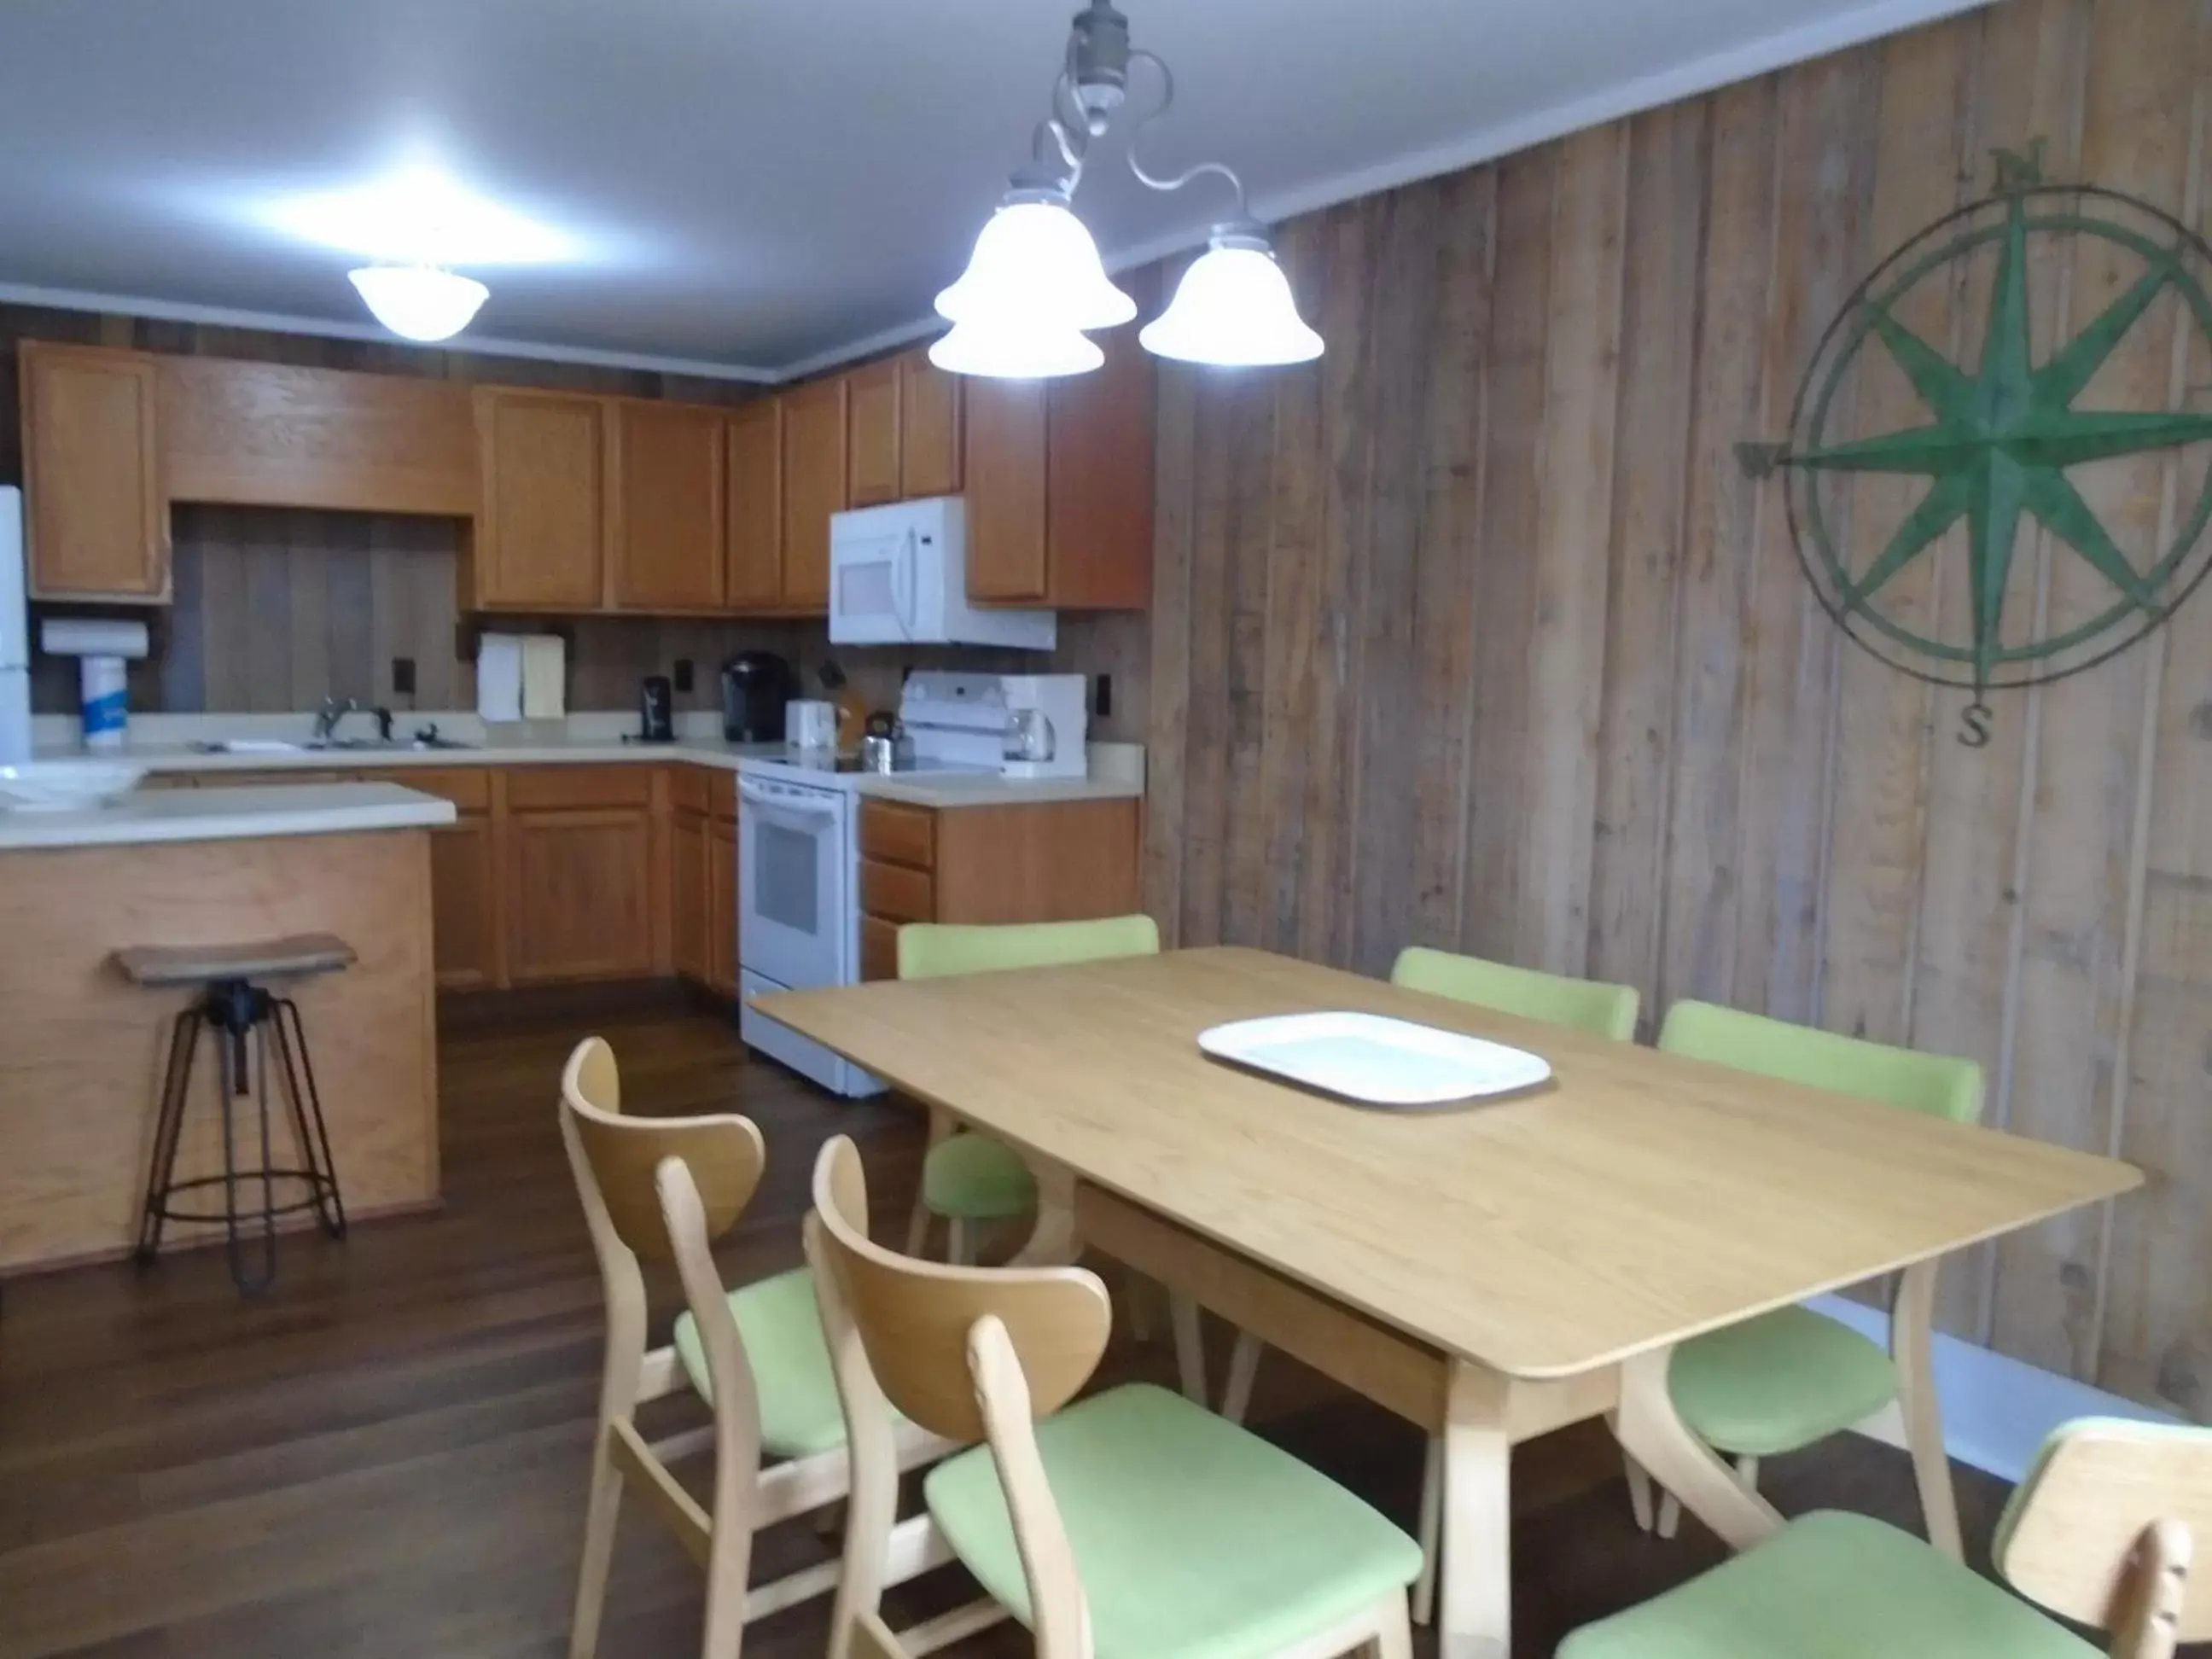 Kitchen or kitchenette, Dining Area in Cedar Village Condominiums